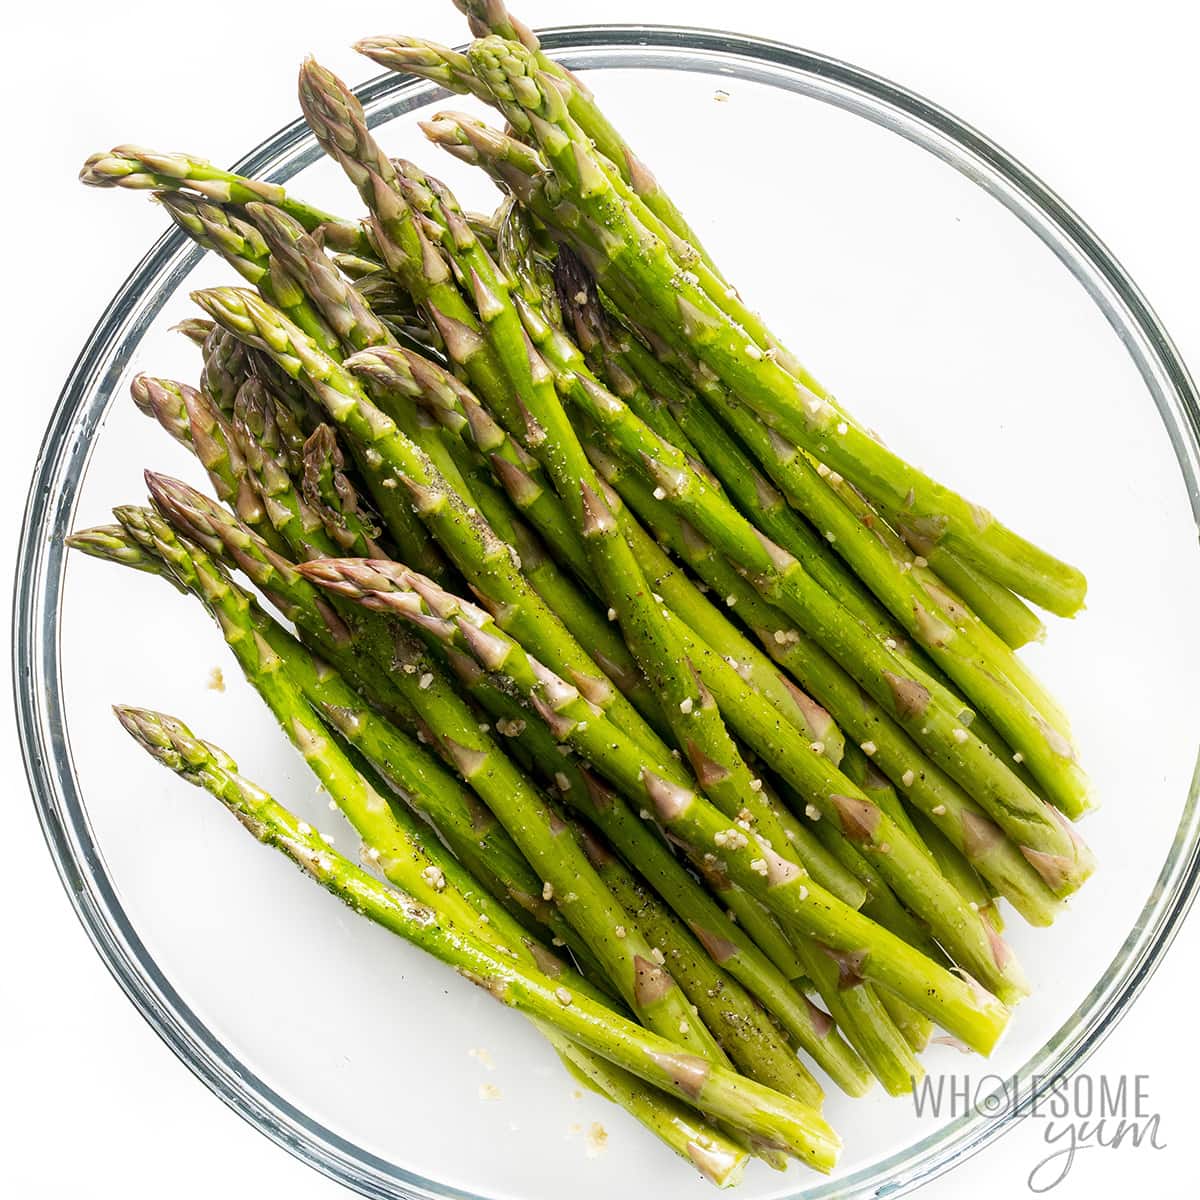 Asparagus in a bowl.